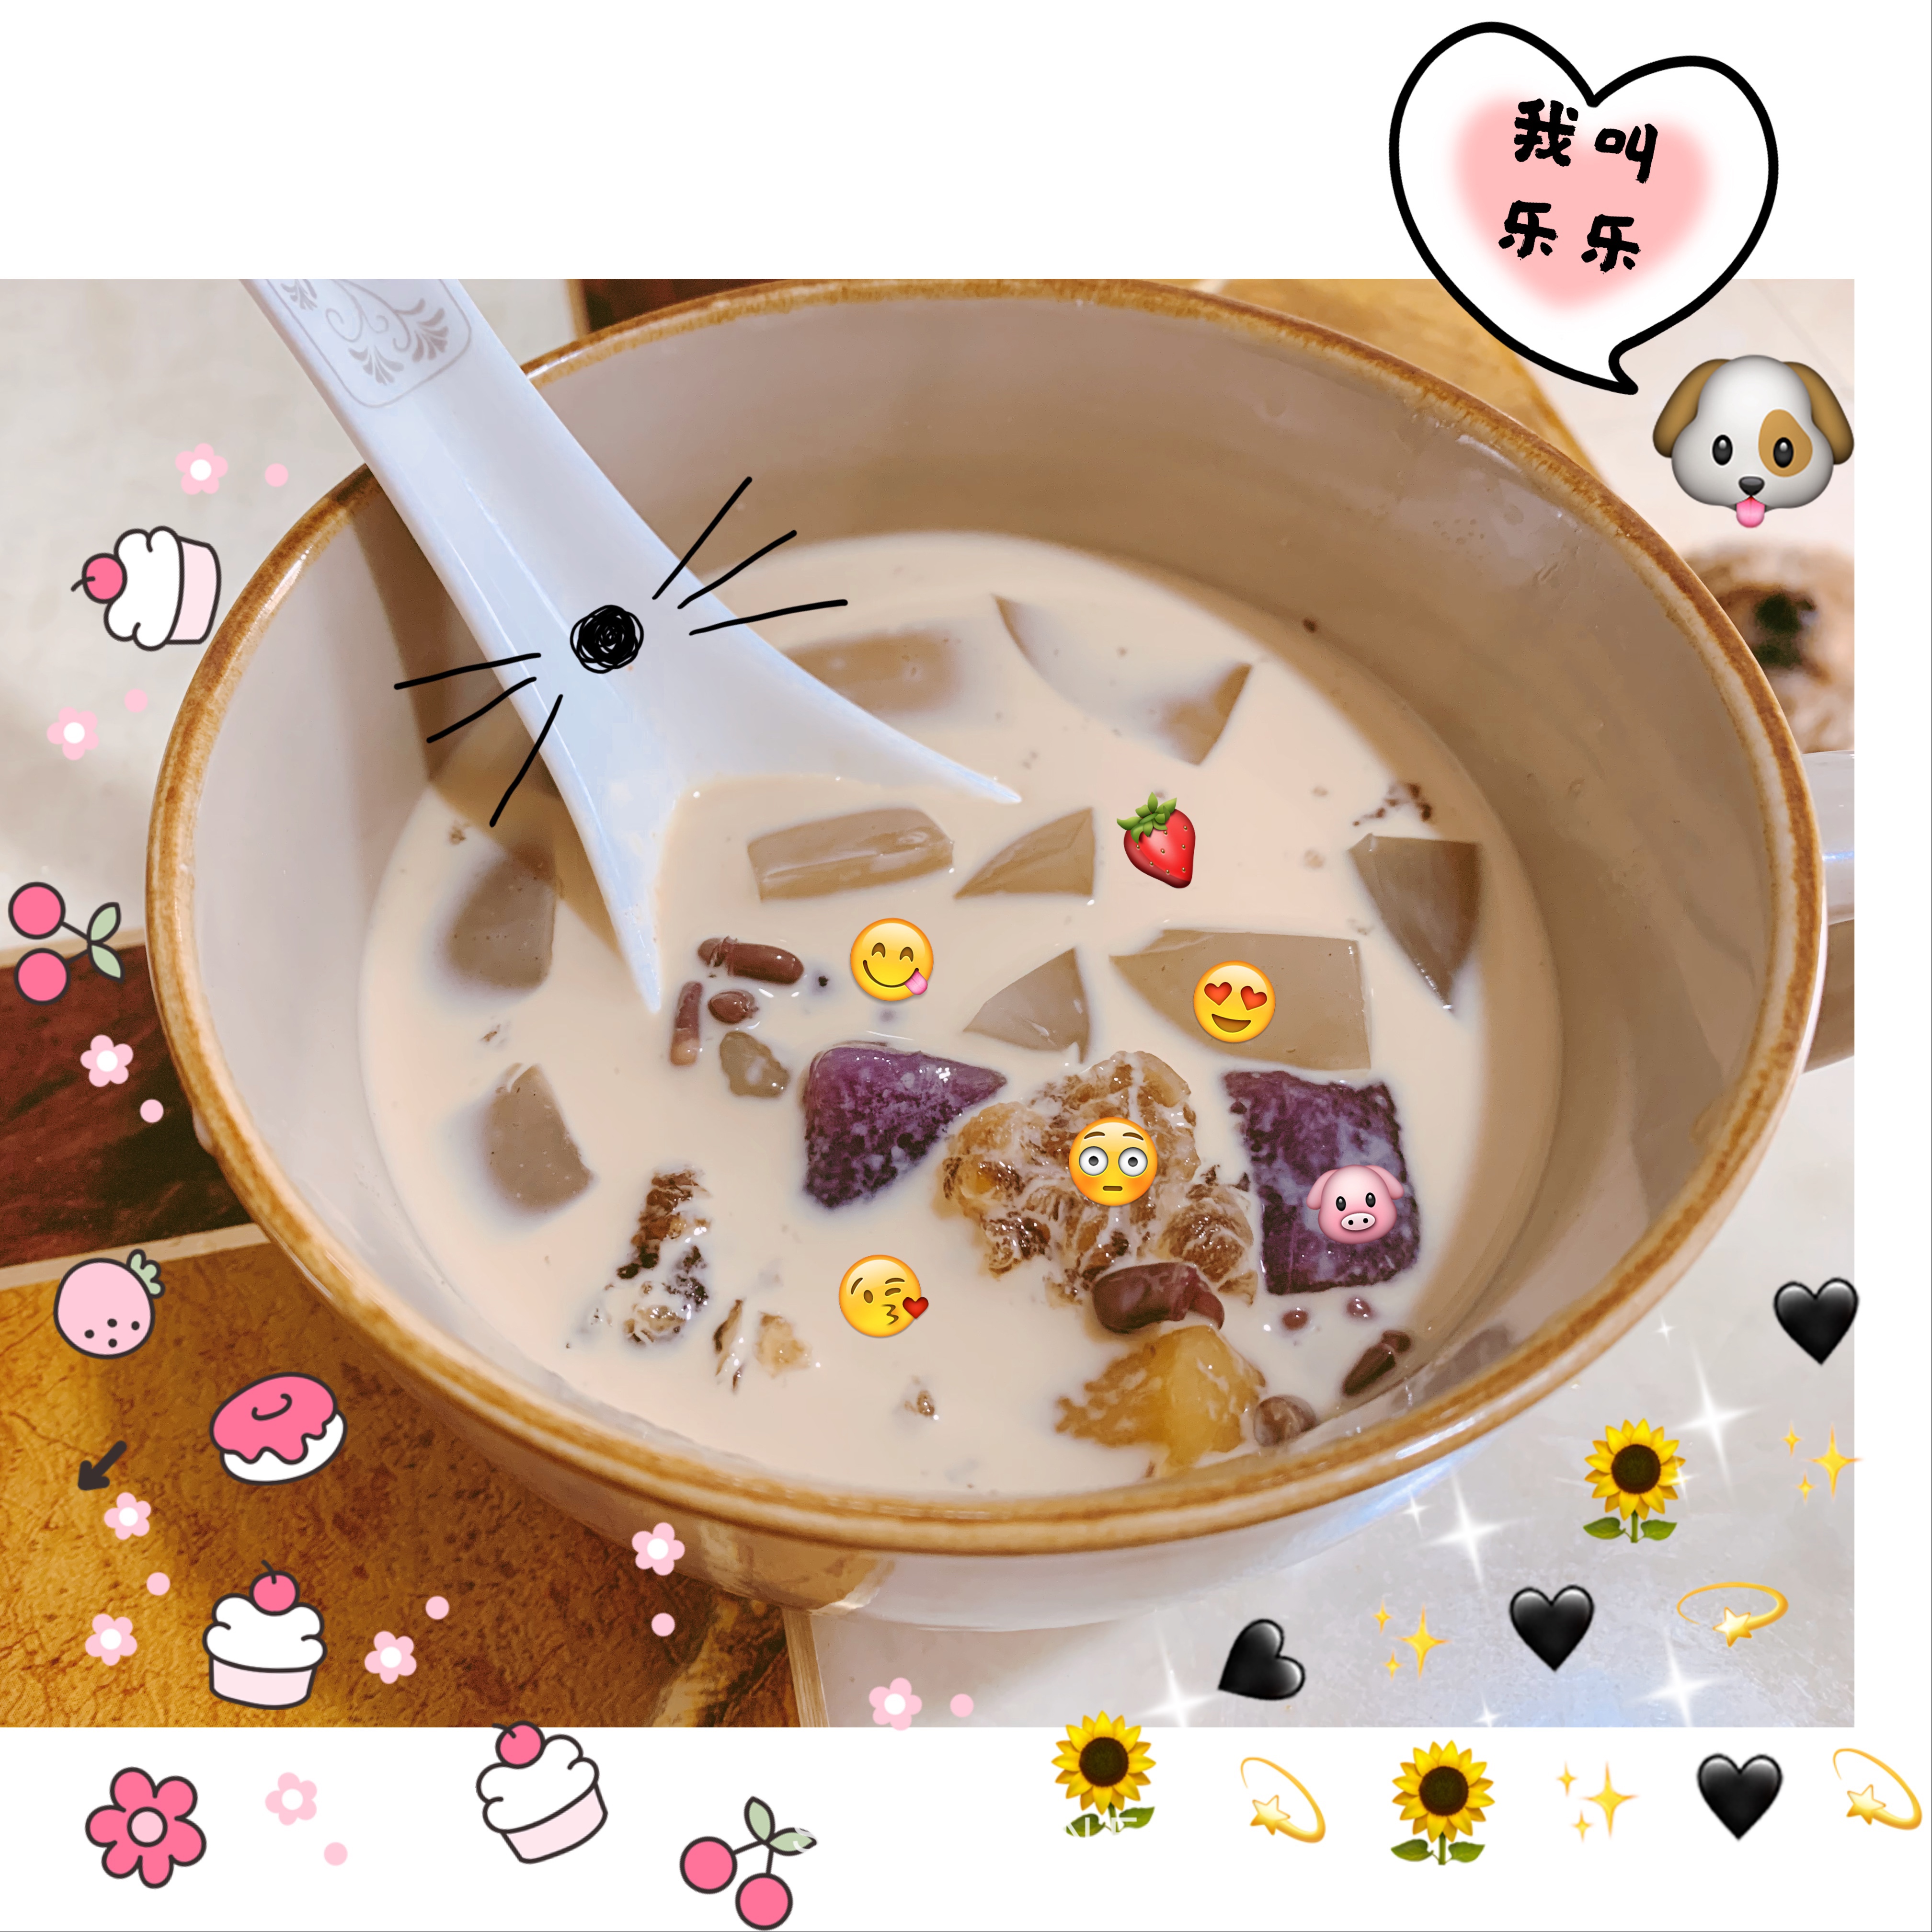 自制港式奶茶纯天然冰粉+西米+芋圆阿达籽+红豆